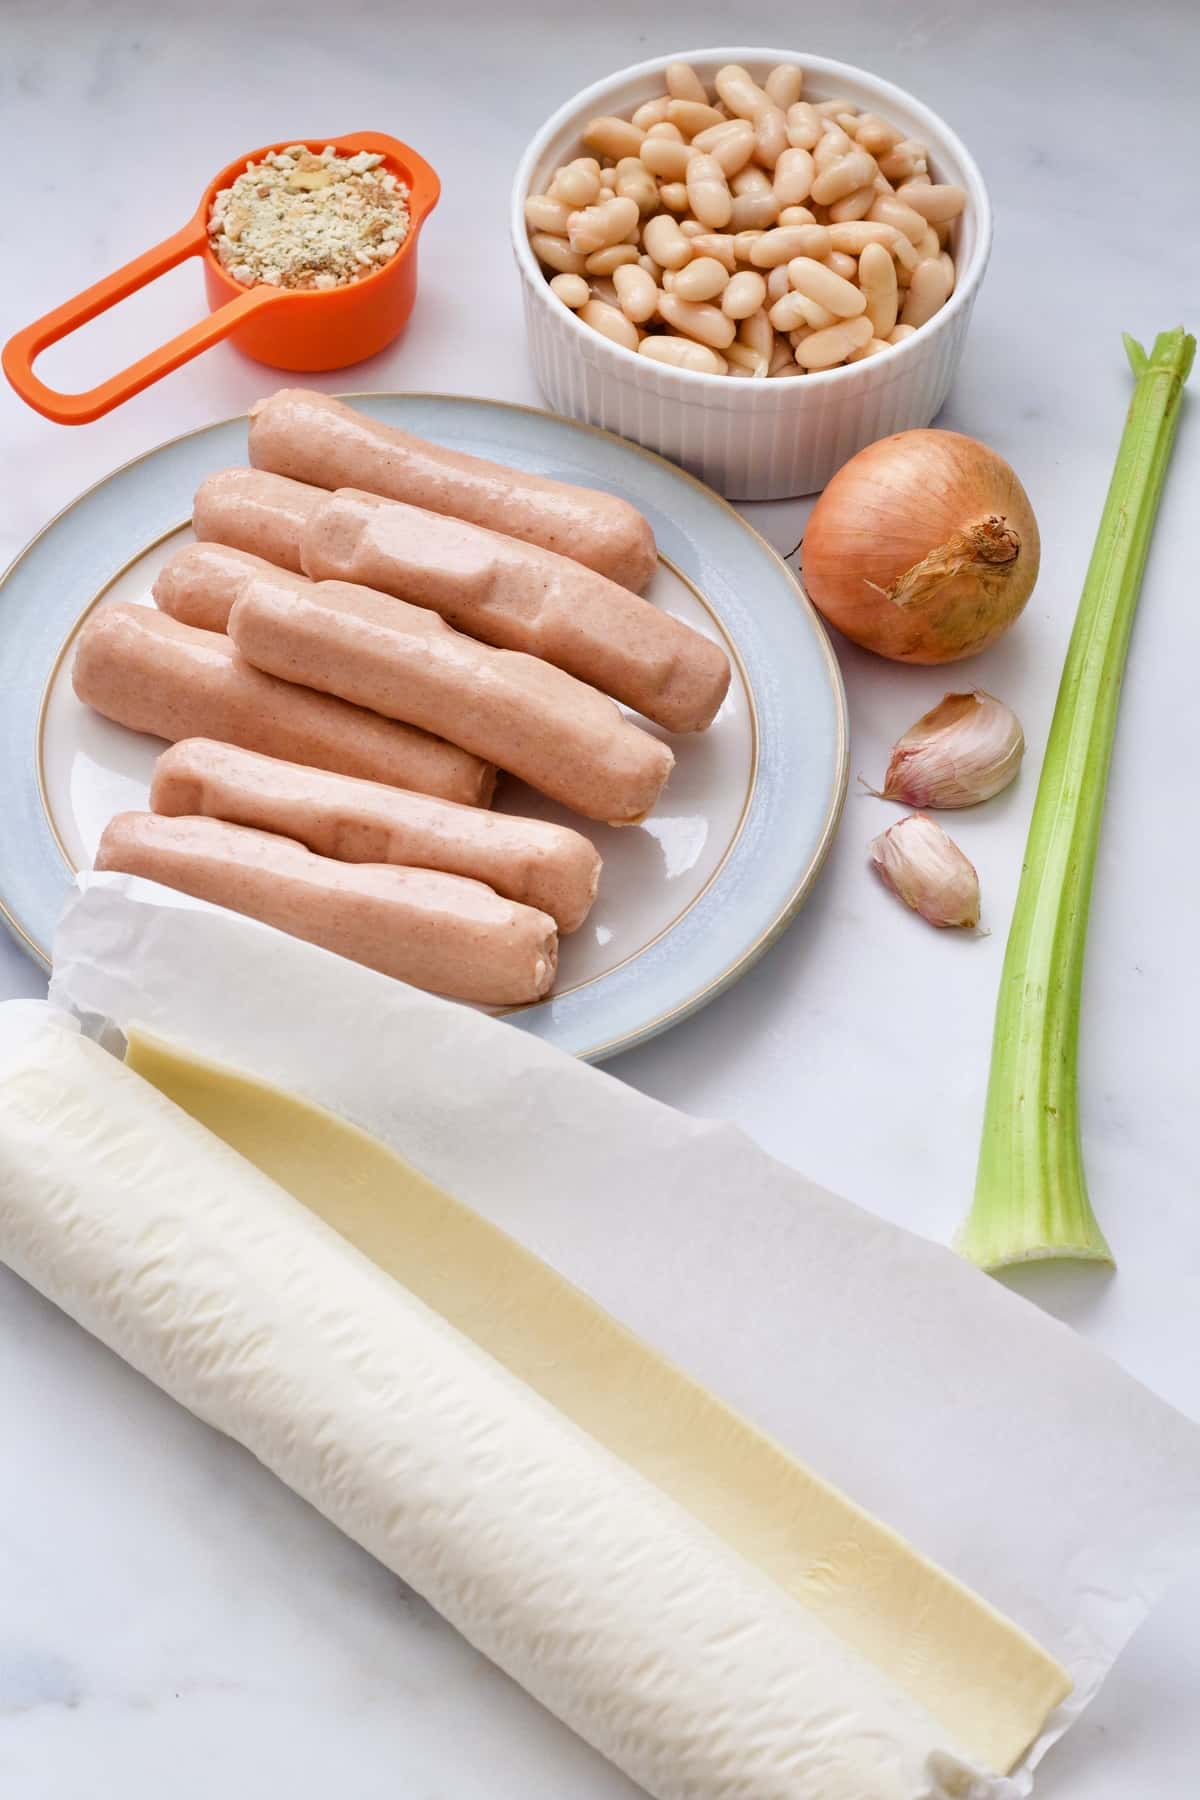 Ingredients for making vegan sausage rolls.